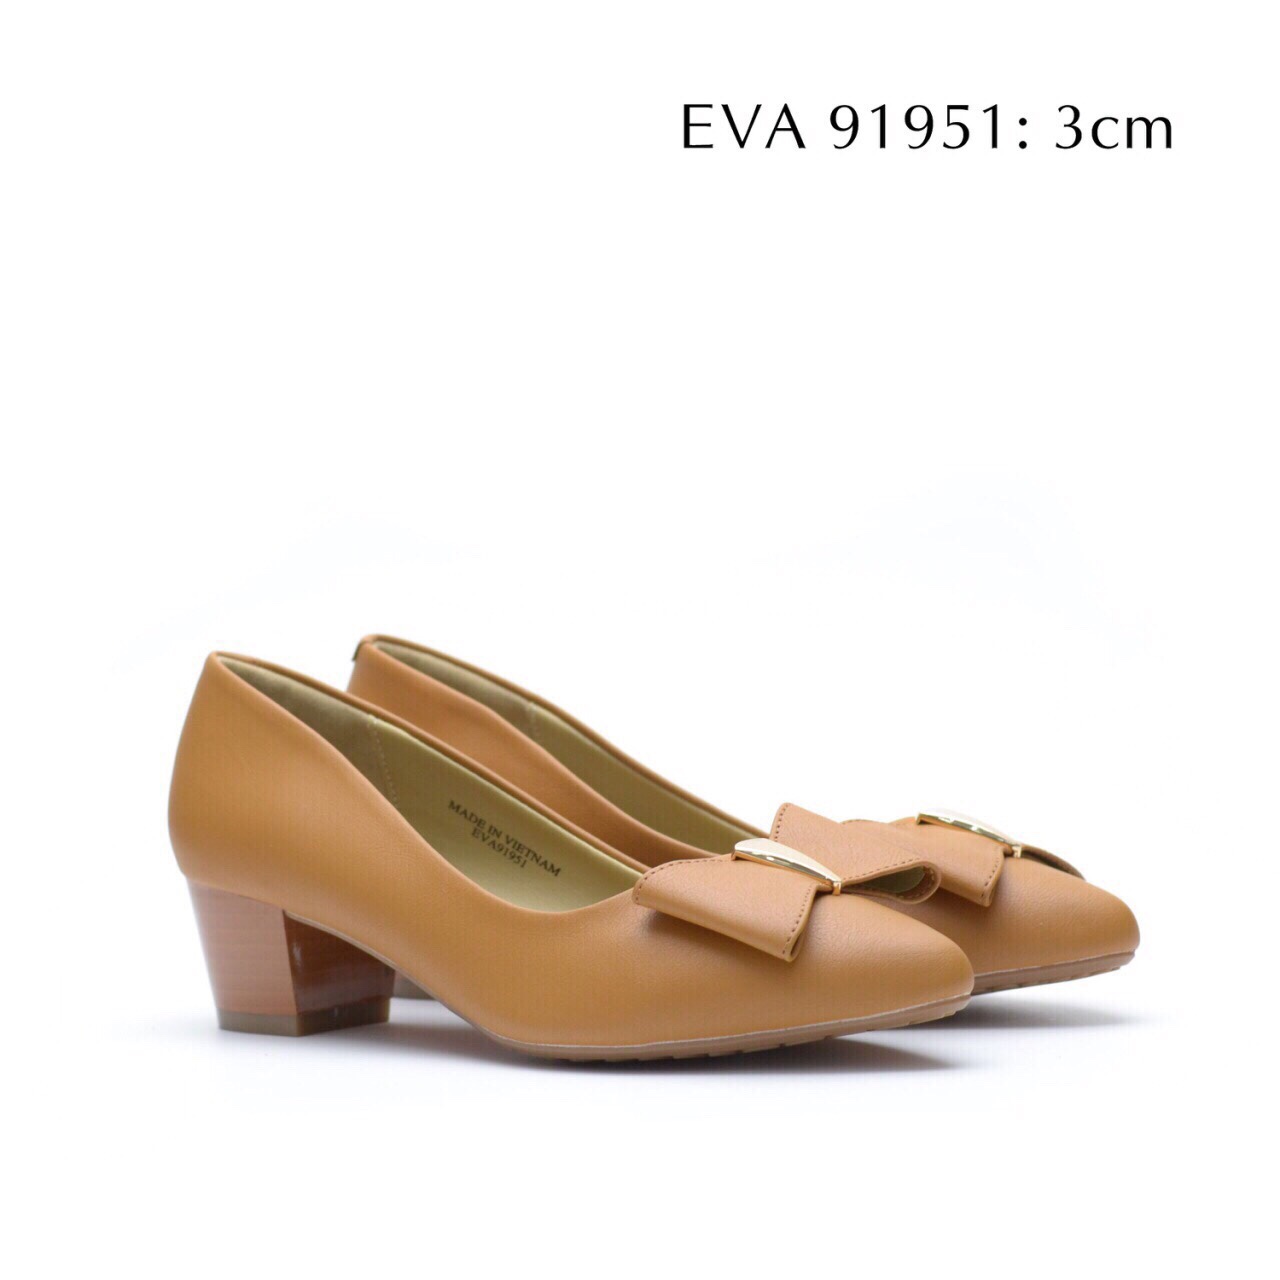 Giày công sở EVA91951 cao 3cm kiểu dáng mới 2017.